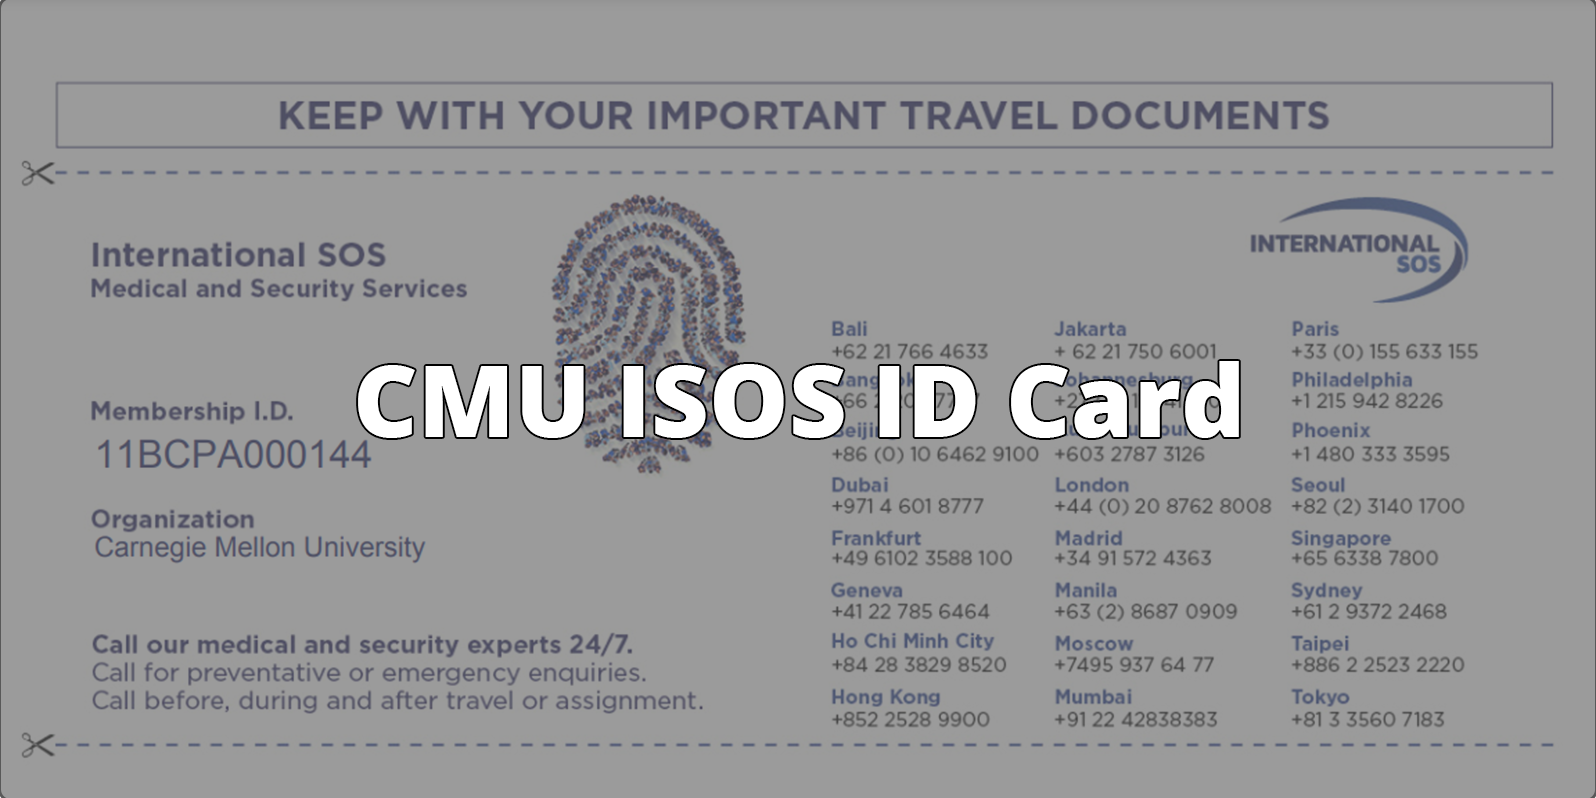 CMU ISOS ID